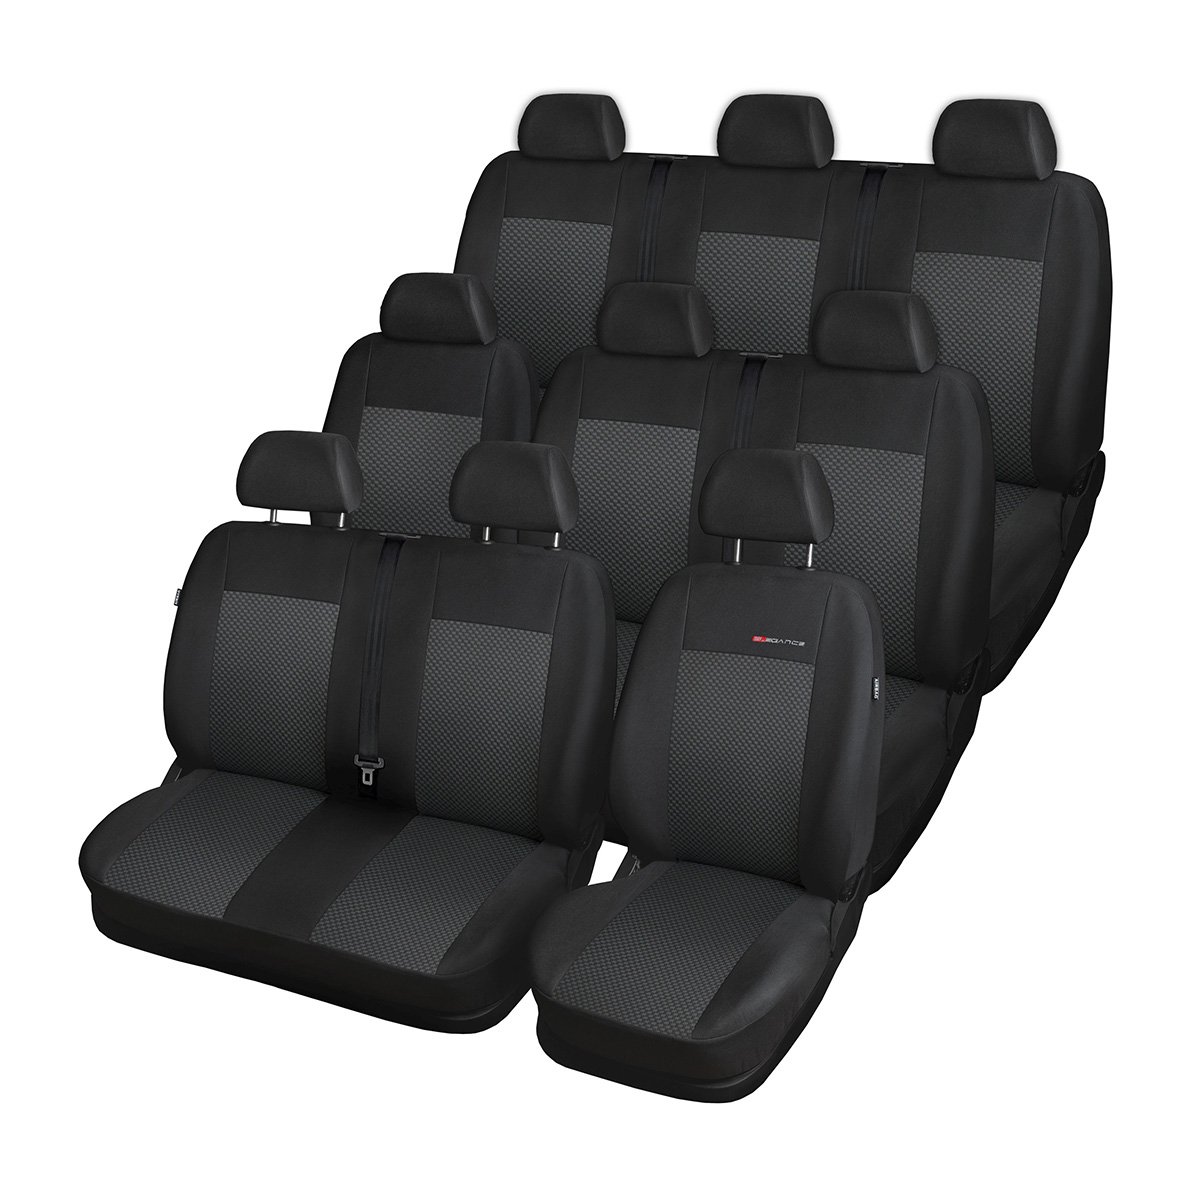 Mossa - Maßgeschneiderte Sitzbezüge Auto kompatibel mit Ford Transit Custom Van (2012- ) - für DREI Reihen (2+1; 3x1; 2+1) - Autositzbezüge Schonbezüge für Autositze - E3 von Mossa